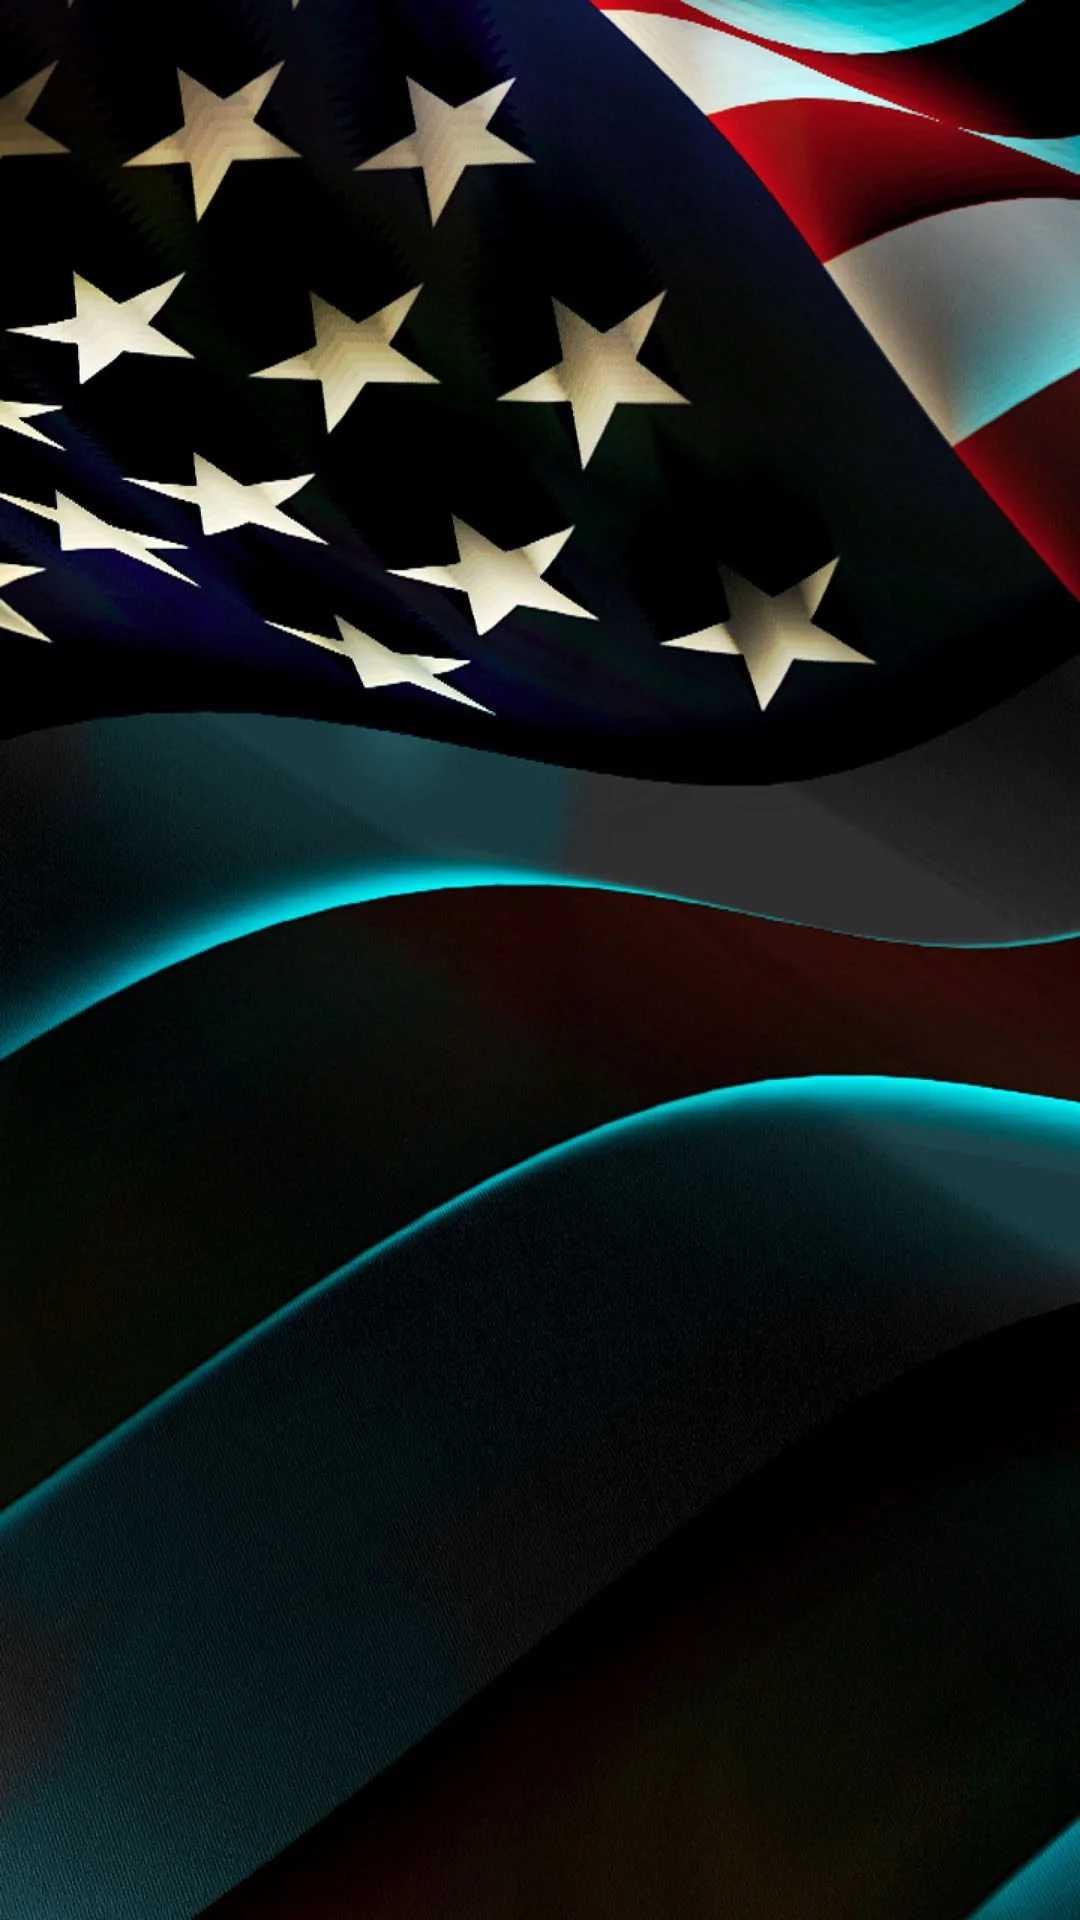 48 Cool American Flag iPhone Wallpapers  WallpaperSafari